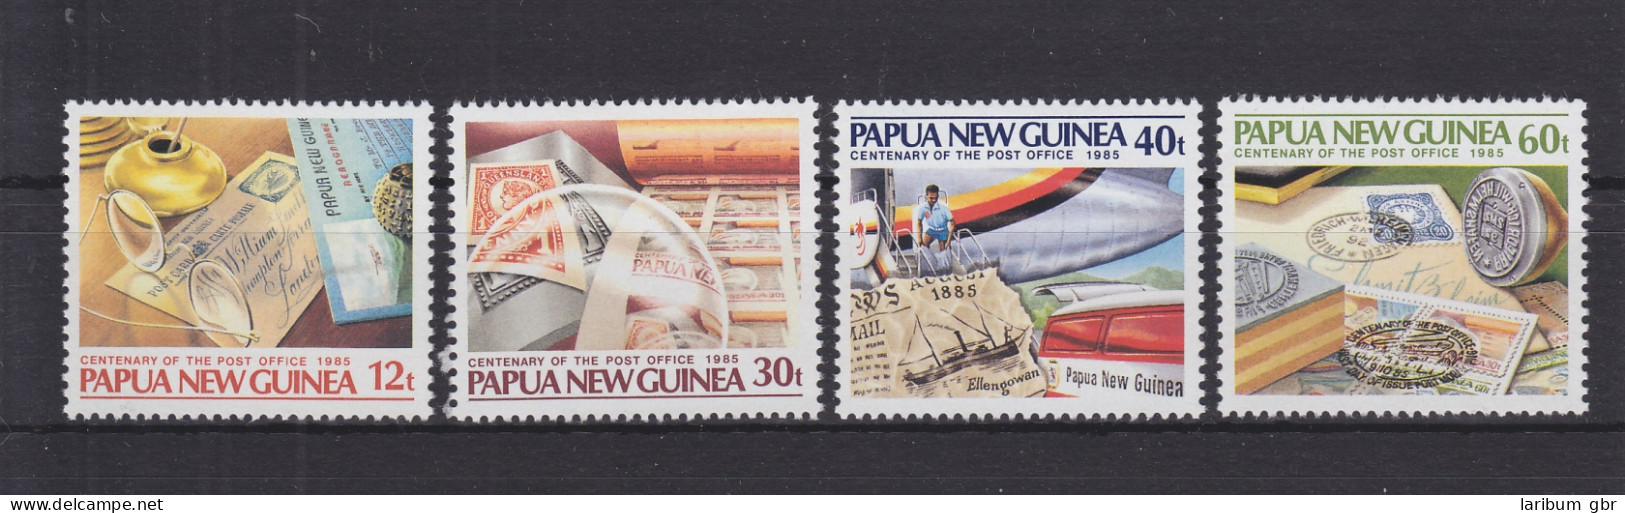 Papua-Neuguinea 504-507 Postfrisch 100 Jahre Postdienst, MNH #GE275 - Papua-Neuguinea